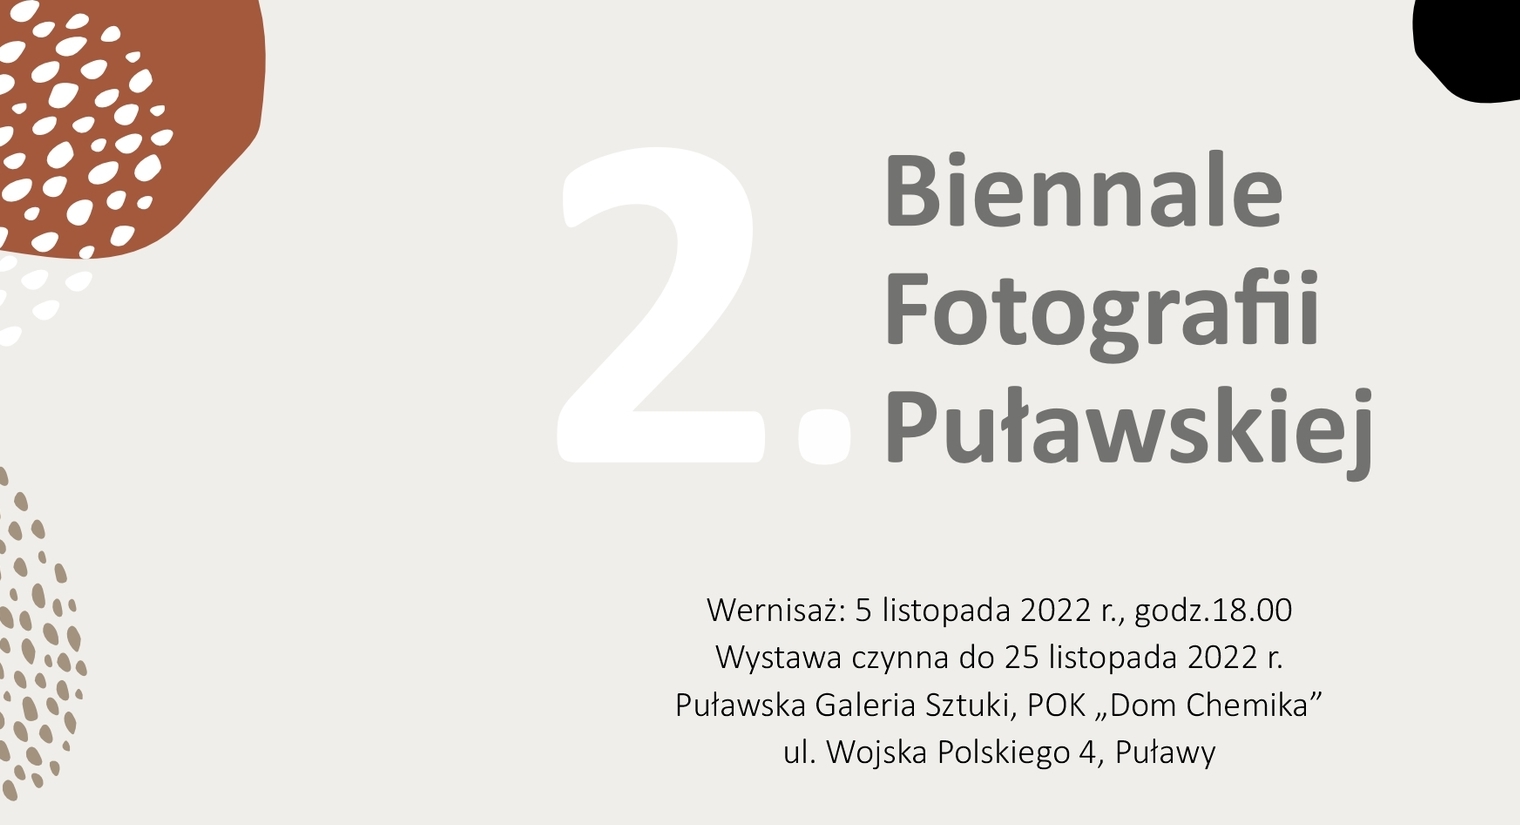 2022-11-05-Wernisaz-Biennale.jpg